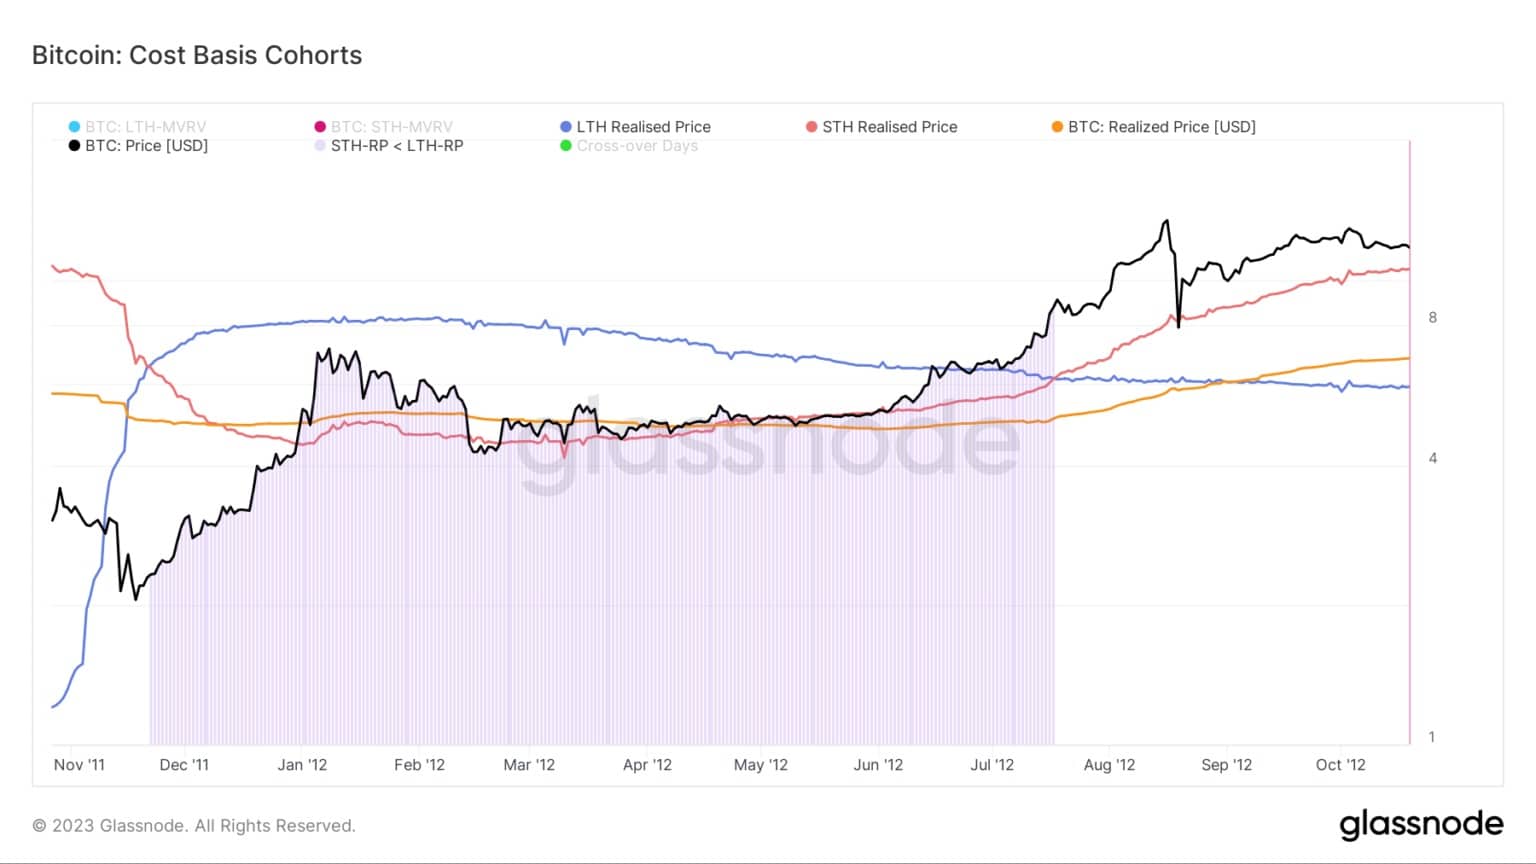 Grafiek met de kosten-basis voor Bitcoin cohorten tijdens de 2011/2012 bear market (Bron: Glassnode)